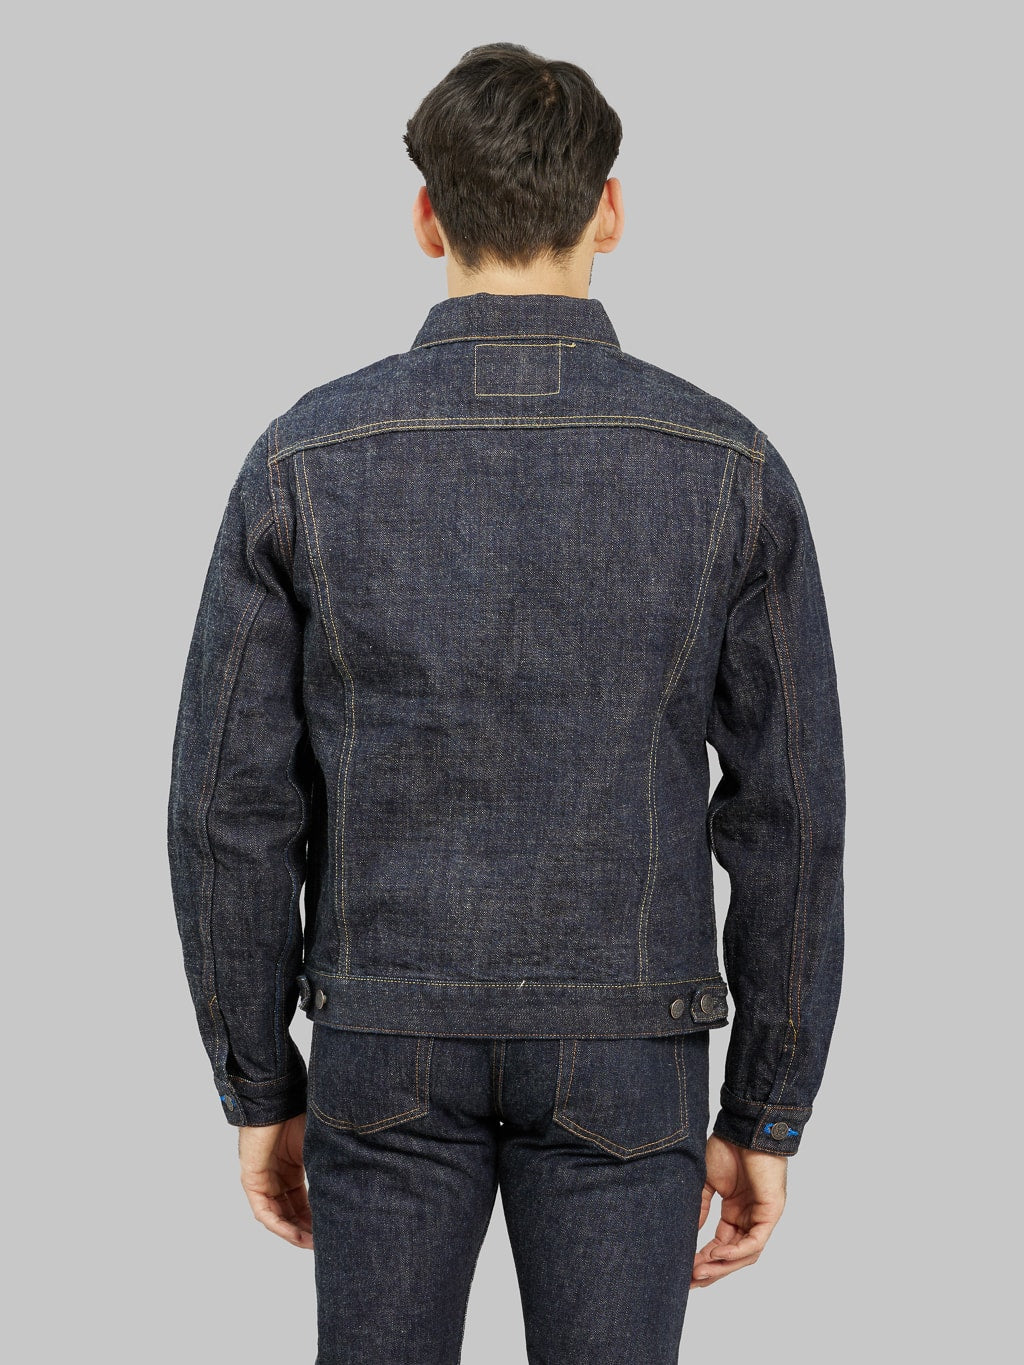 Tanuki zetto benkei type III jacket back fit